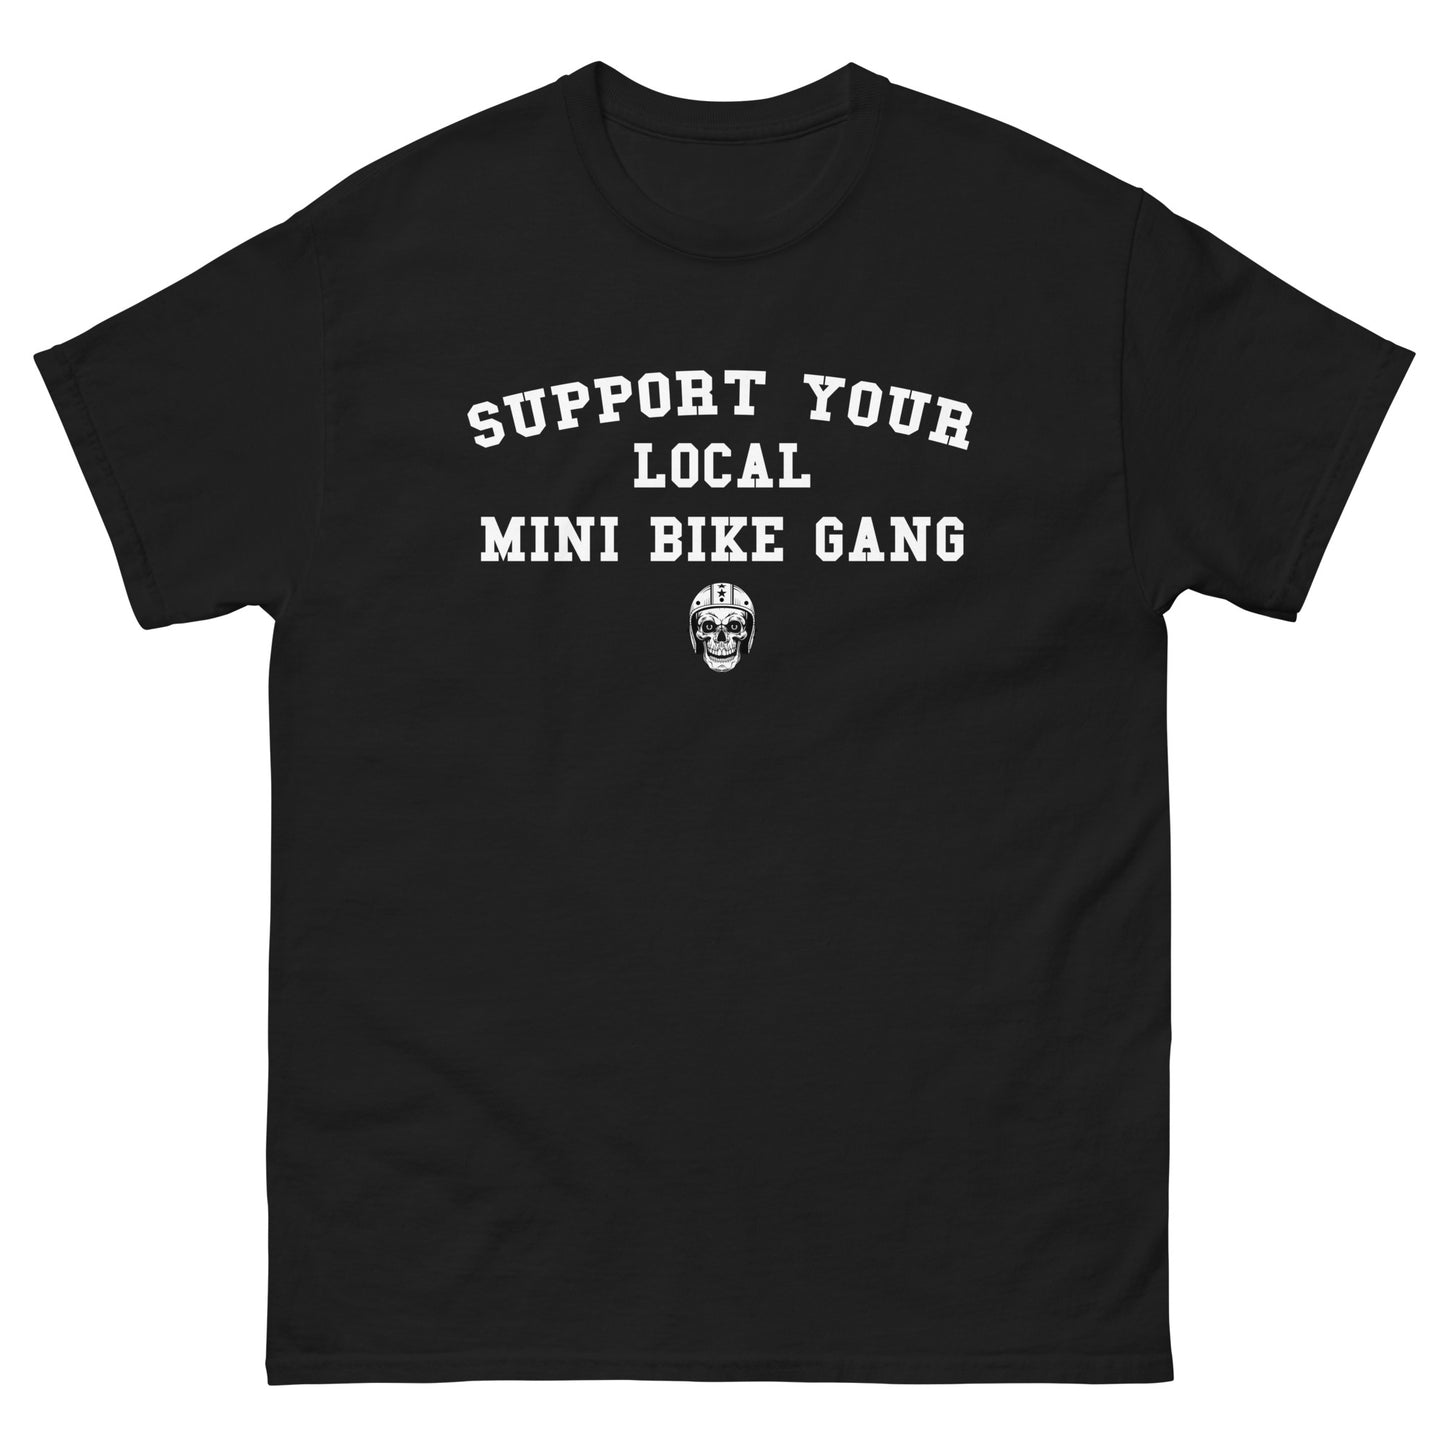 Support Mini Bike Gangs!